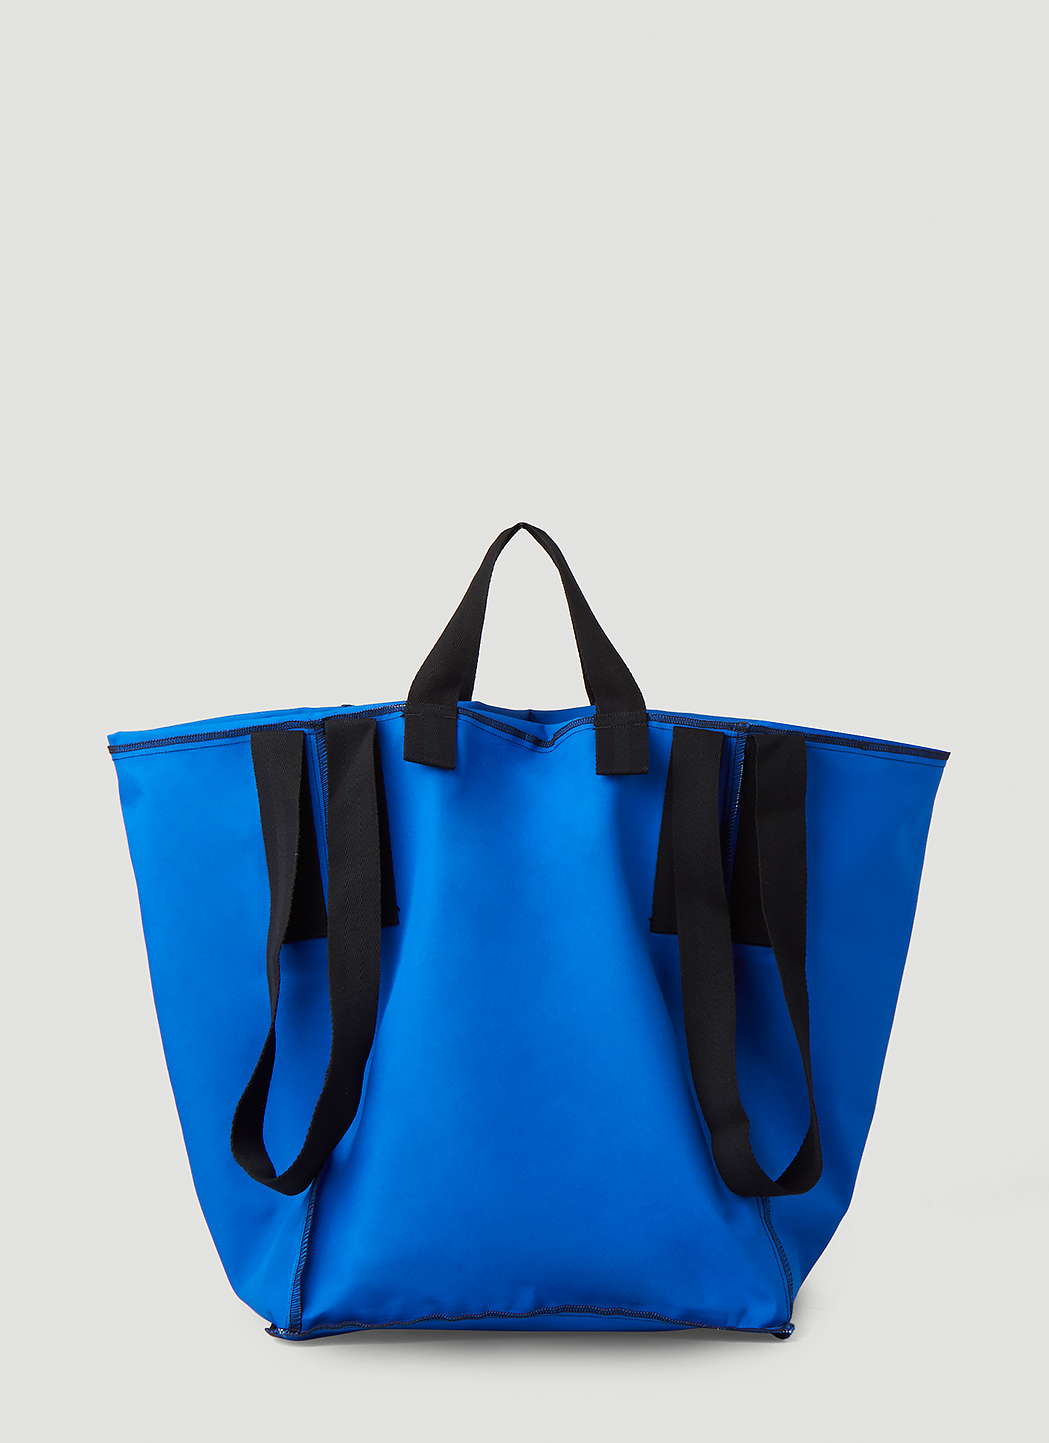 Shop Courreges Women's Bags